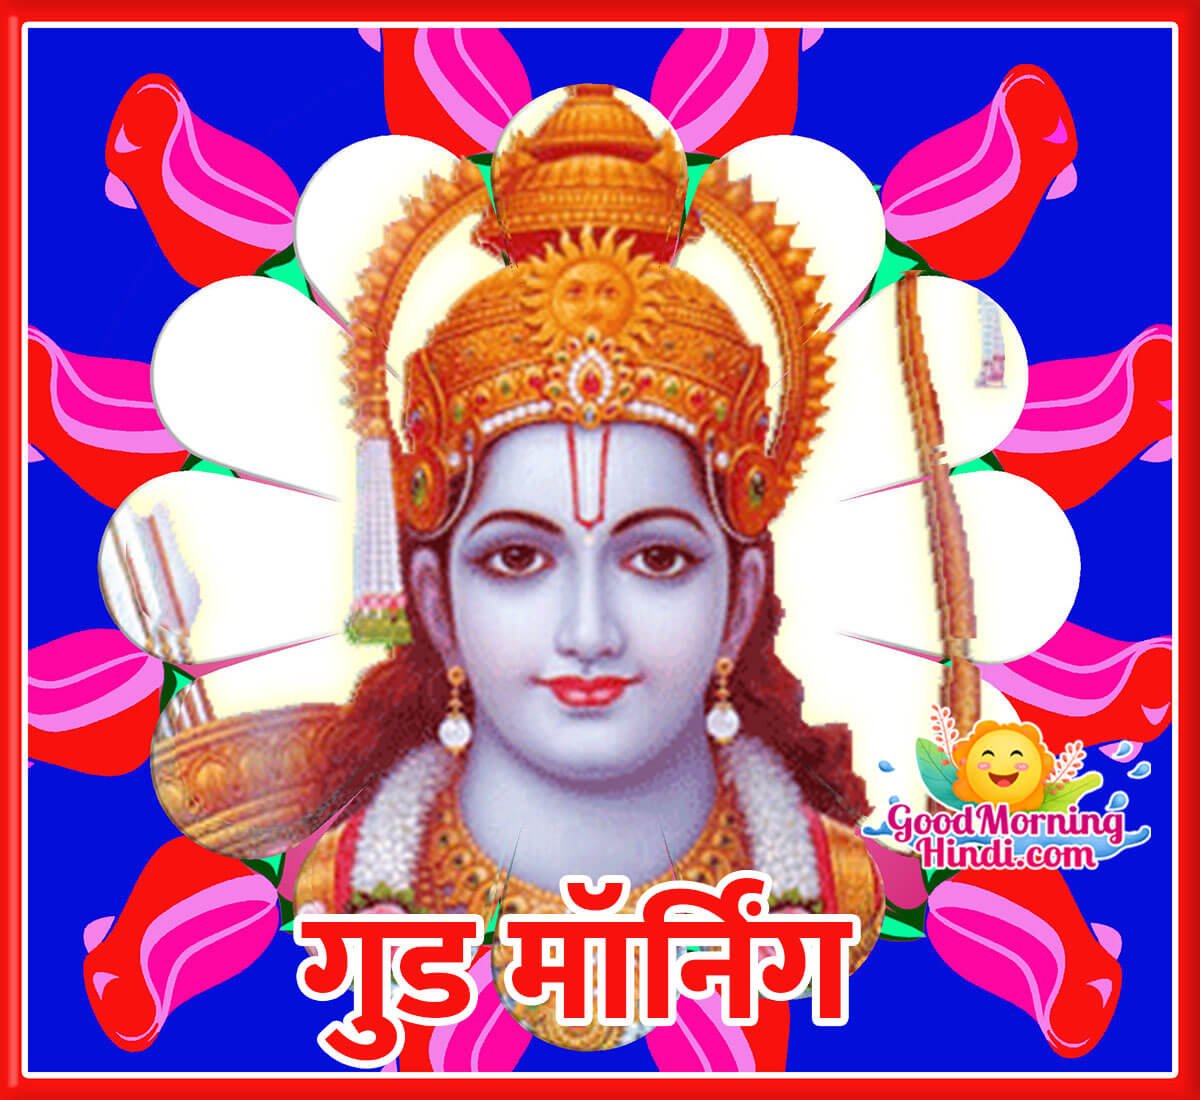 Good Morning Shri Ram Hindi Image